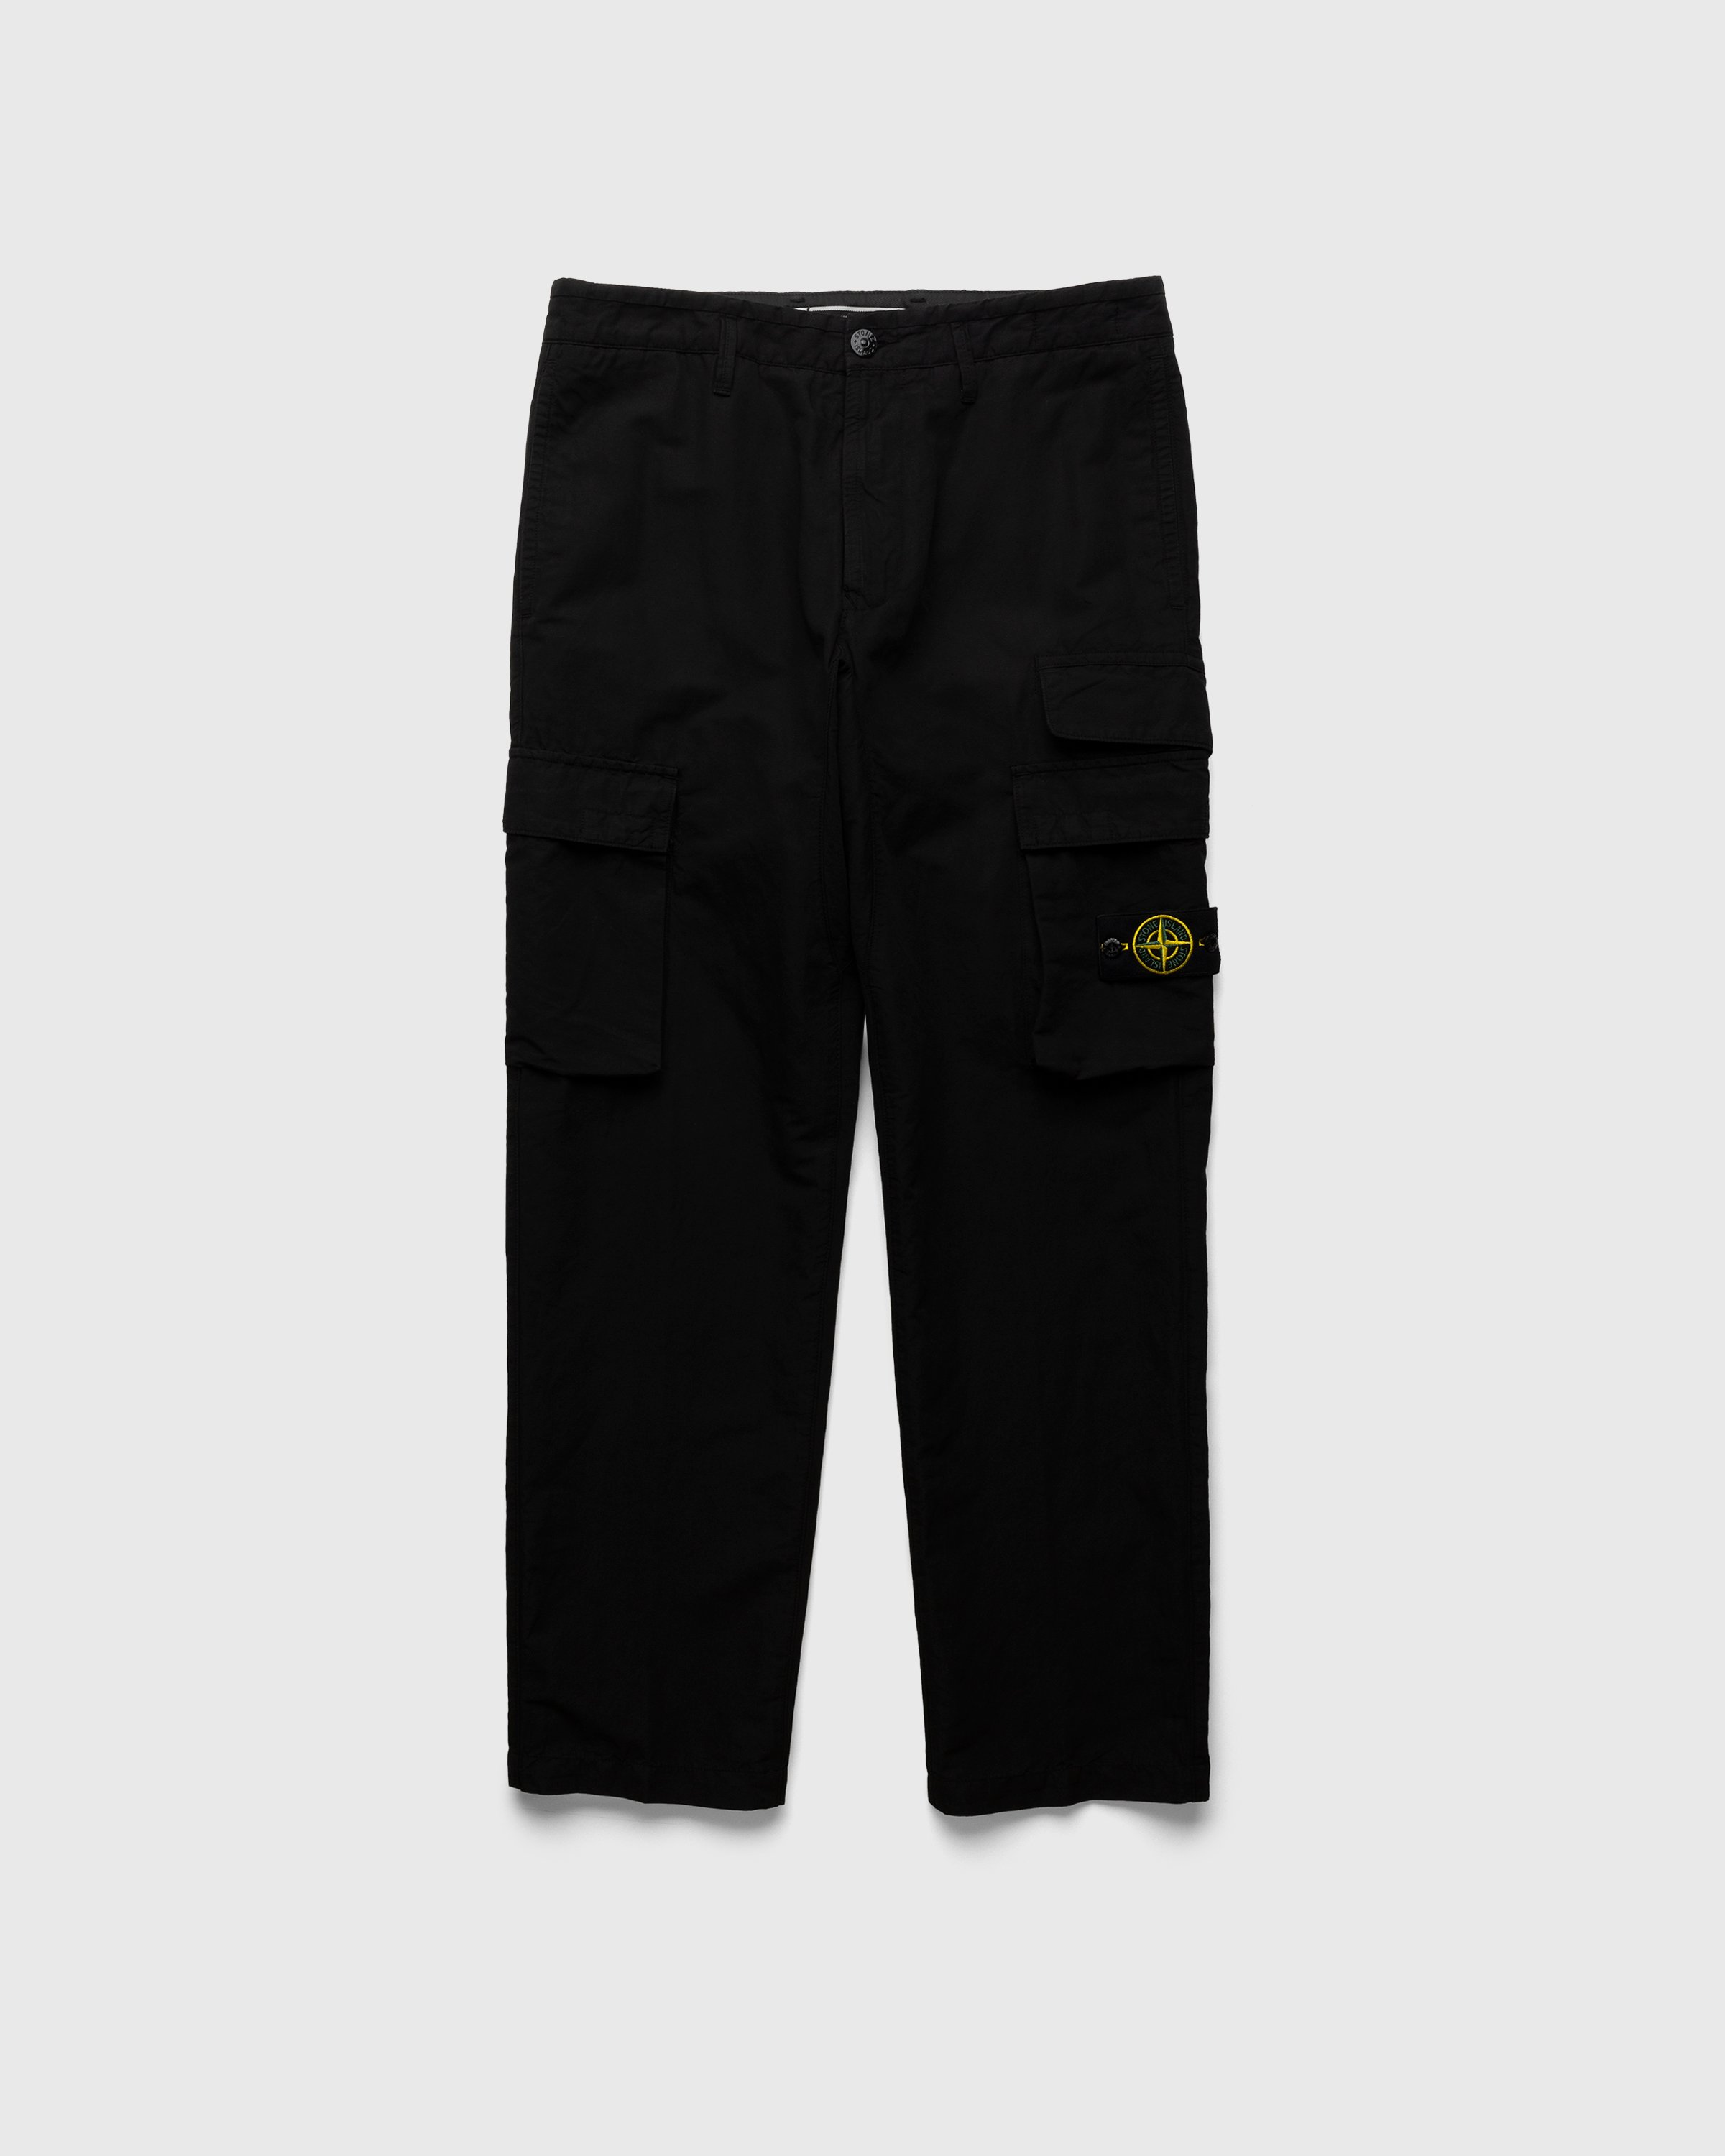 Stone Island - 31706 Garment-Dyed Cargo Pants Black - Clothing - Black - Image 1